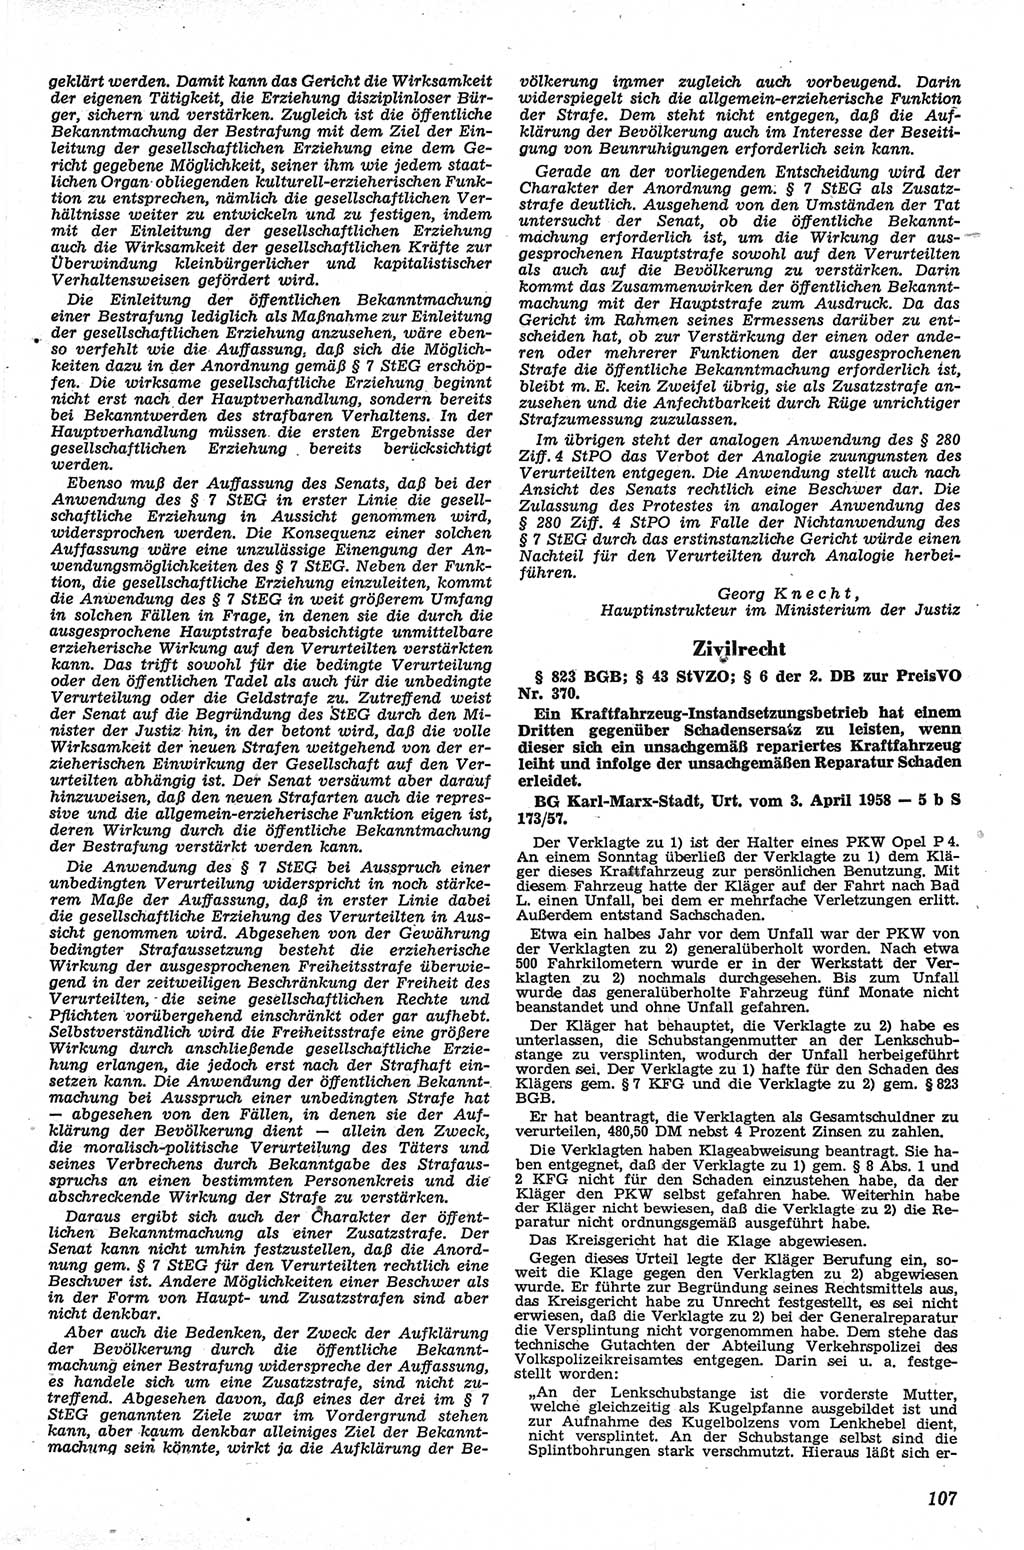 Neue Justiz (NJ), Zeitschrift für Recht und Rechtswissenschaft [Deutsche Demokratische Republik (DDR)], 13. Jahrgang 1959, Seite 107 (NJ DDR 1959, S. 107)